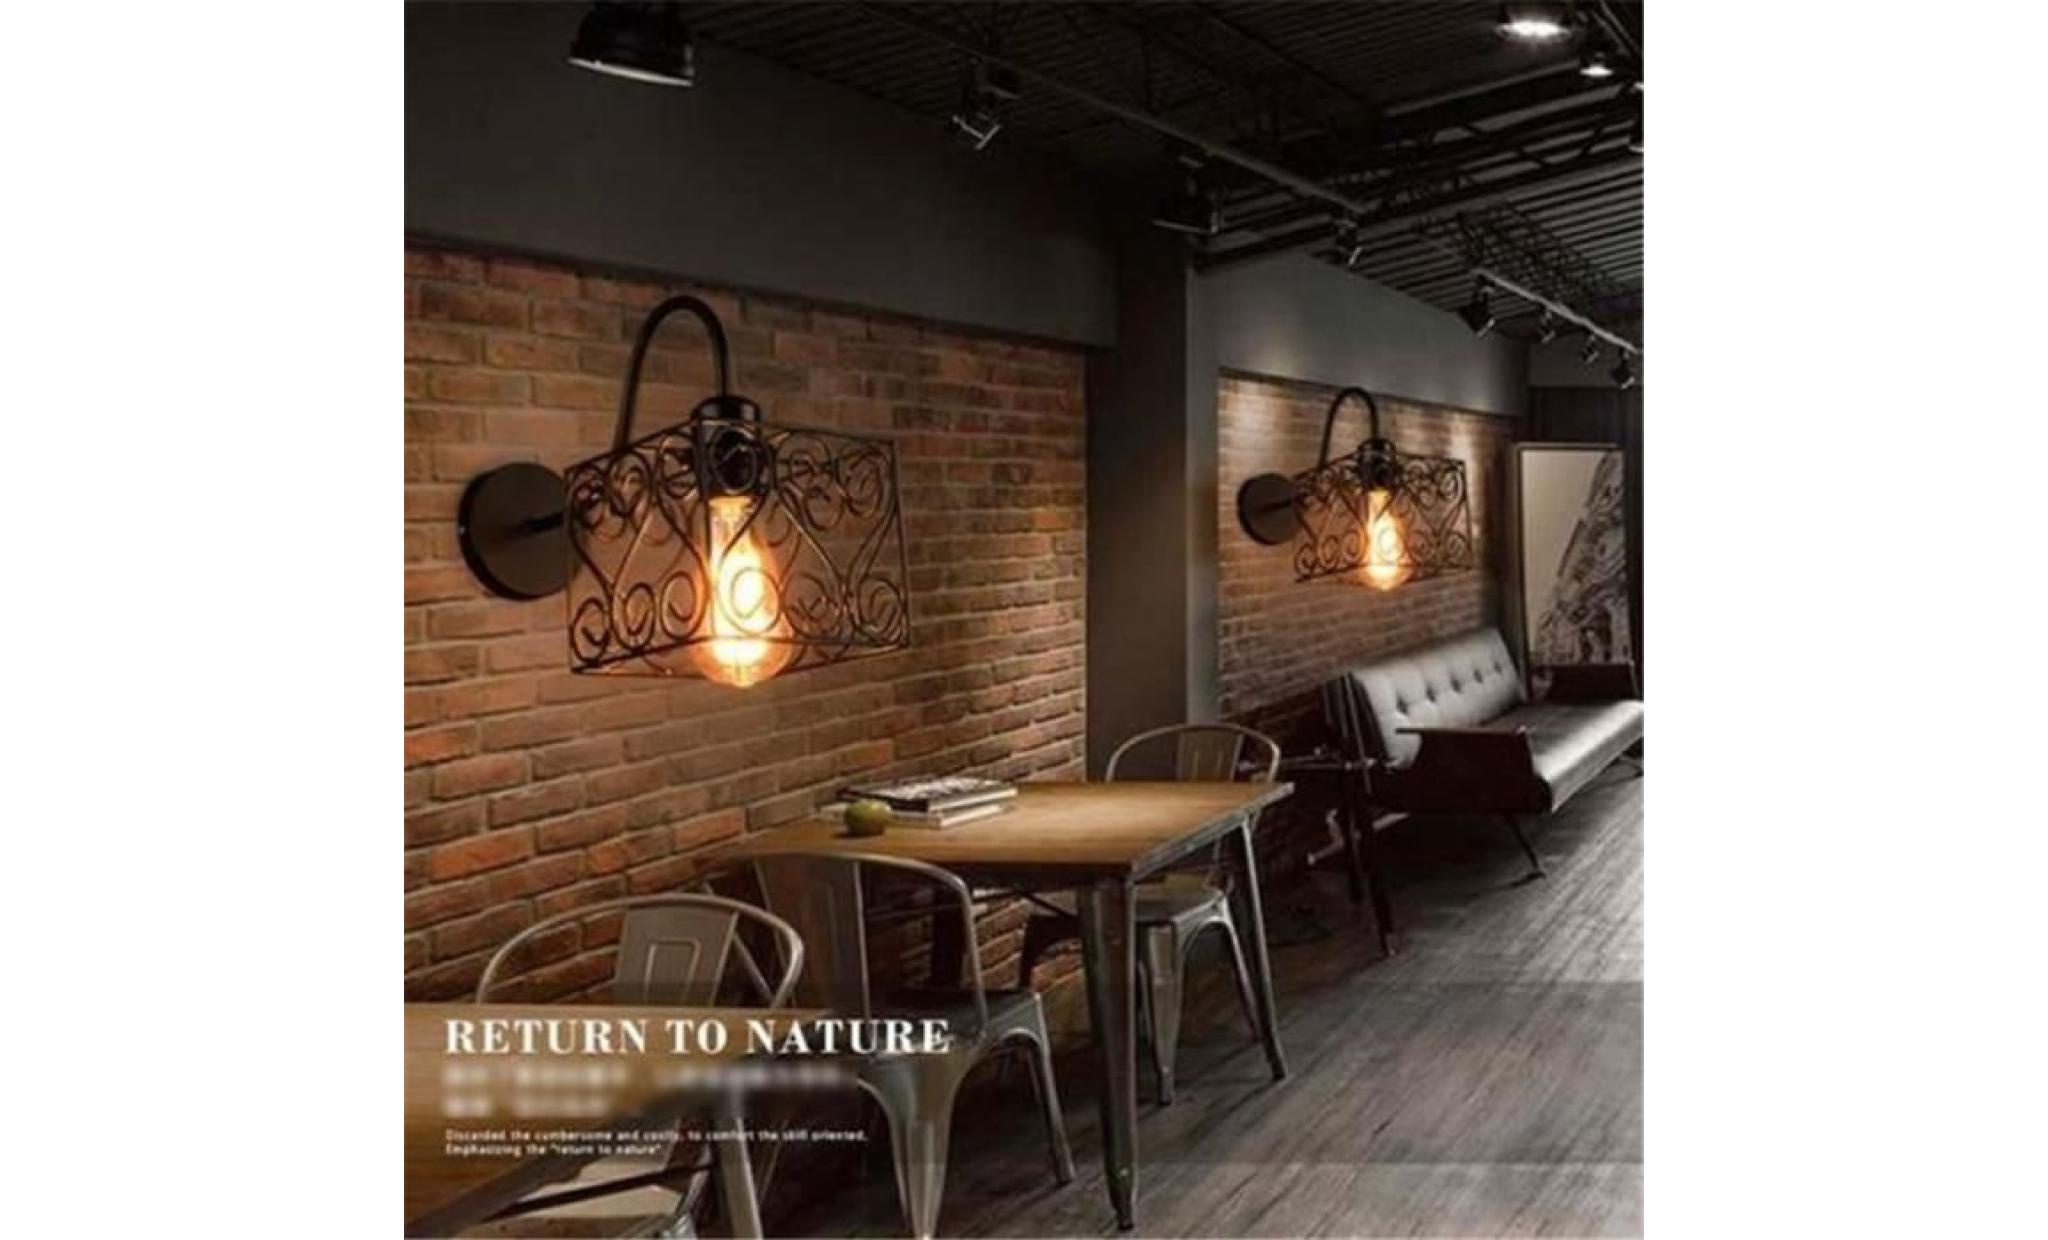 2x rétro vintage applique loft lampe murale réglable mur de feu edison cage de fer e27 industriel décor couloir bar café hôtel style pas cher